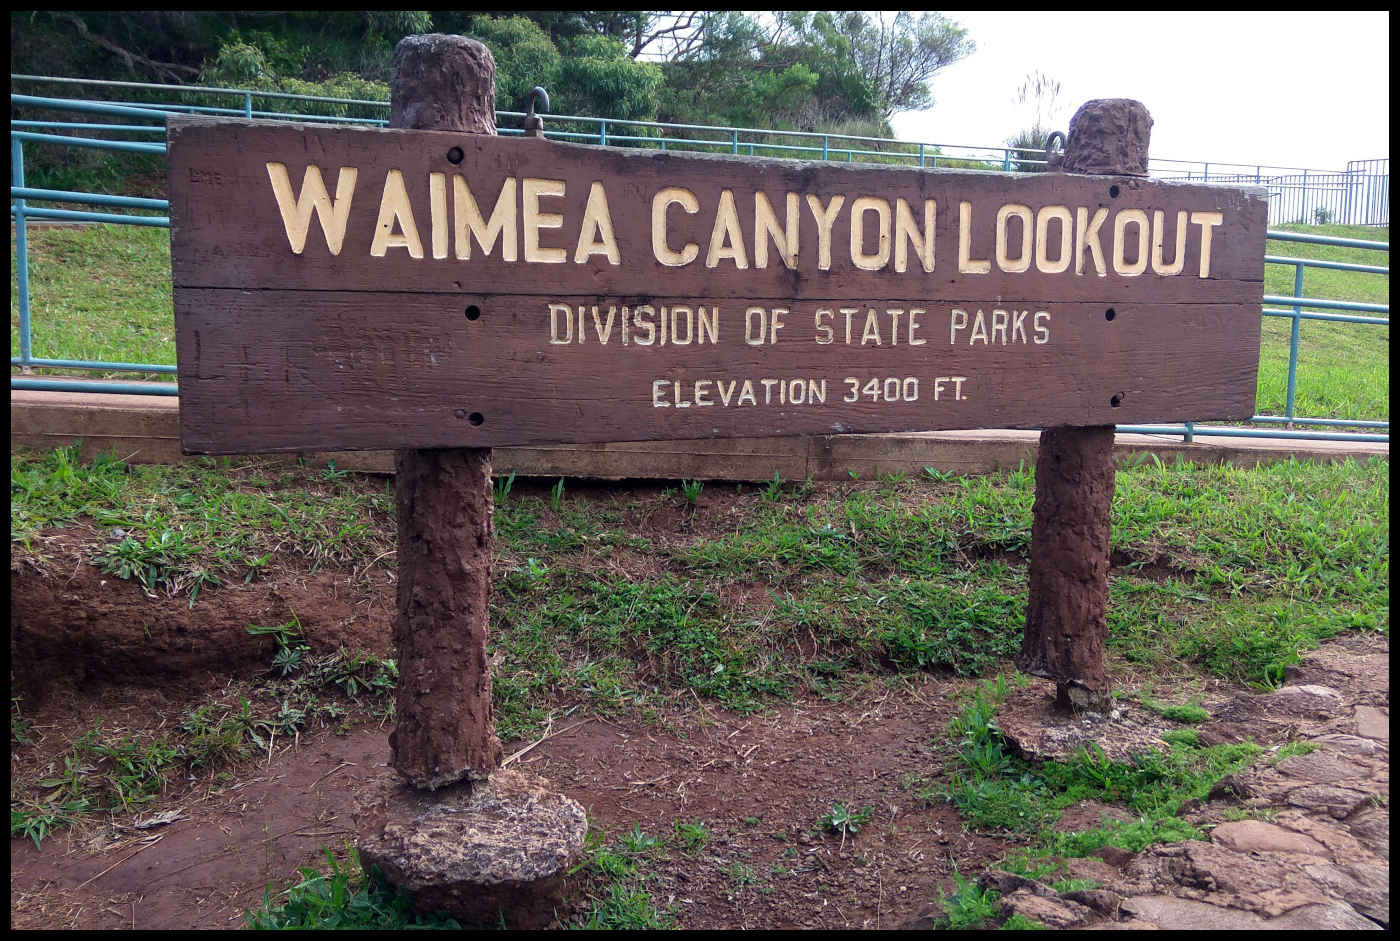 Waimea Canyon Lookout